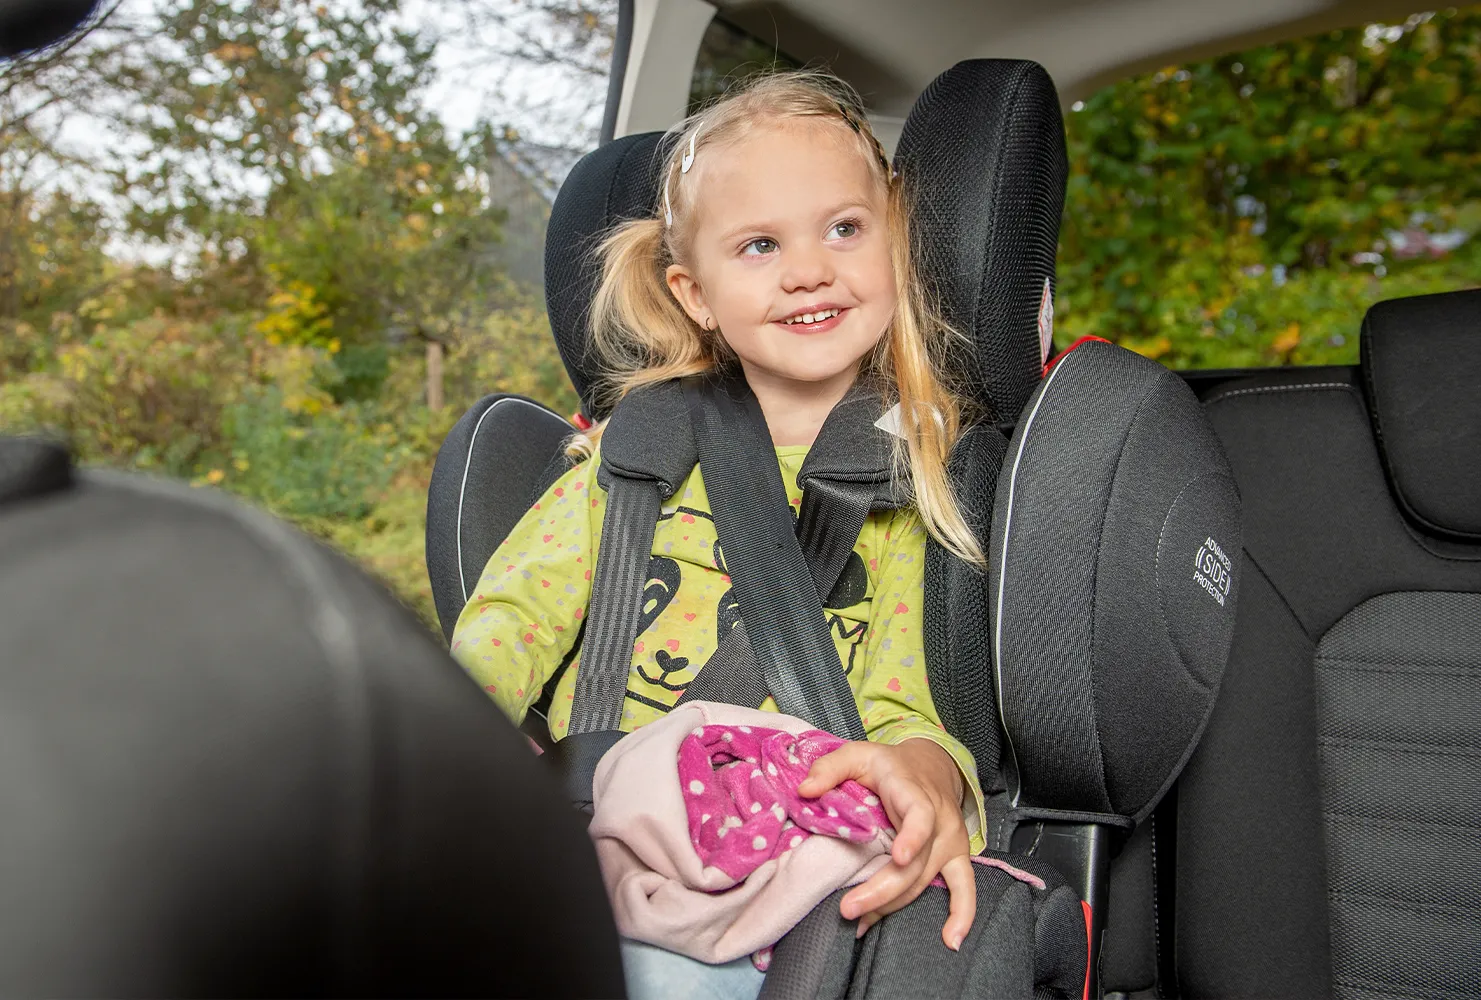 Abschnallschutz für Auto Kindersitz nur für Abnehmbare